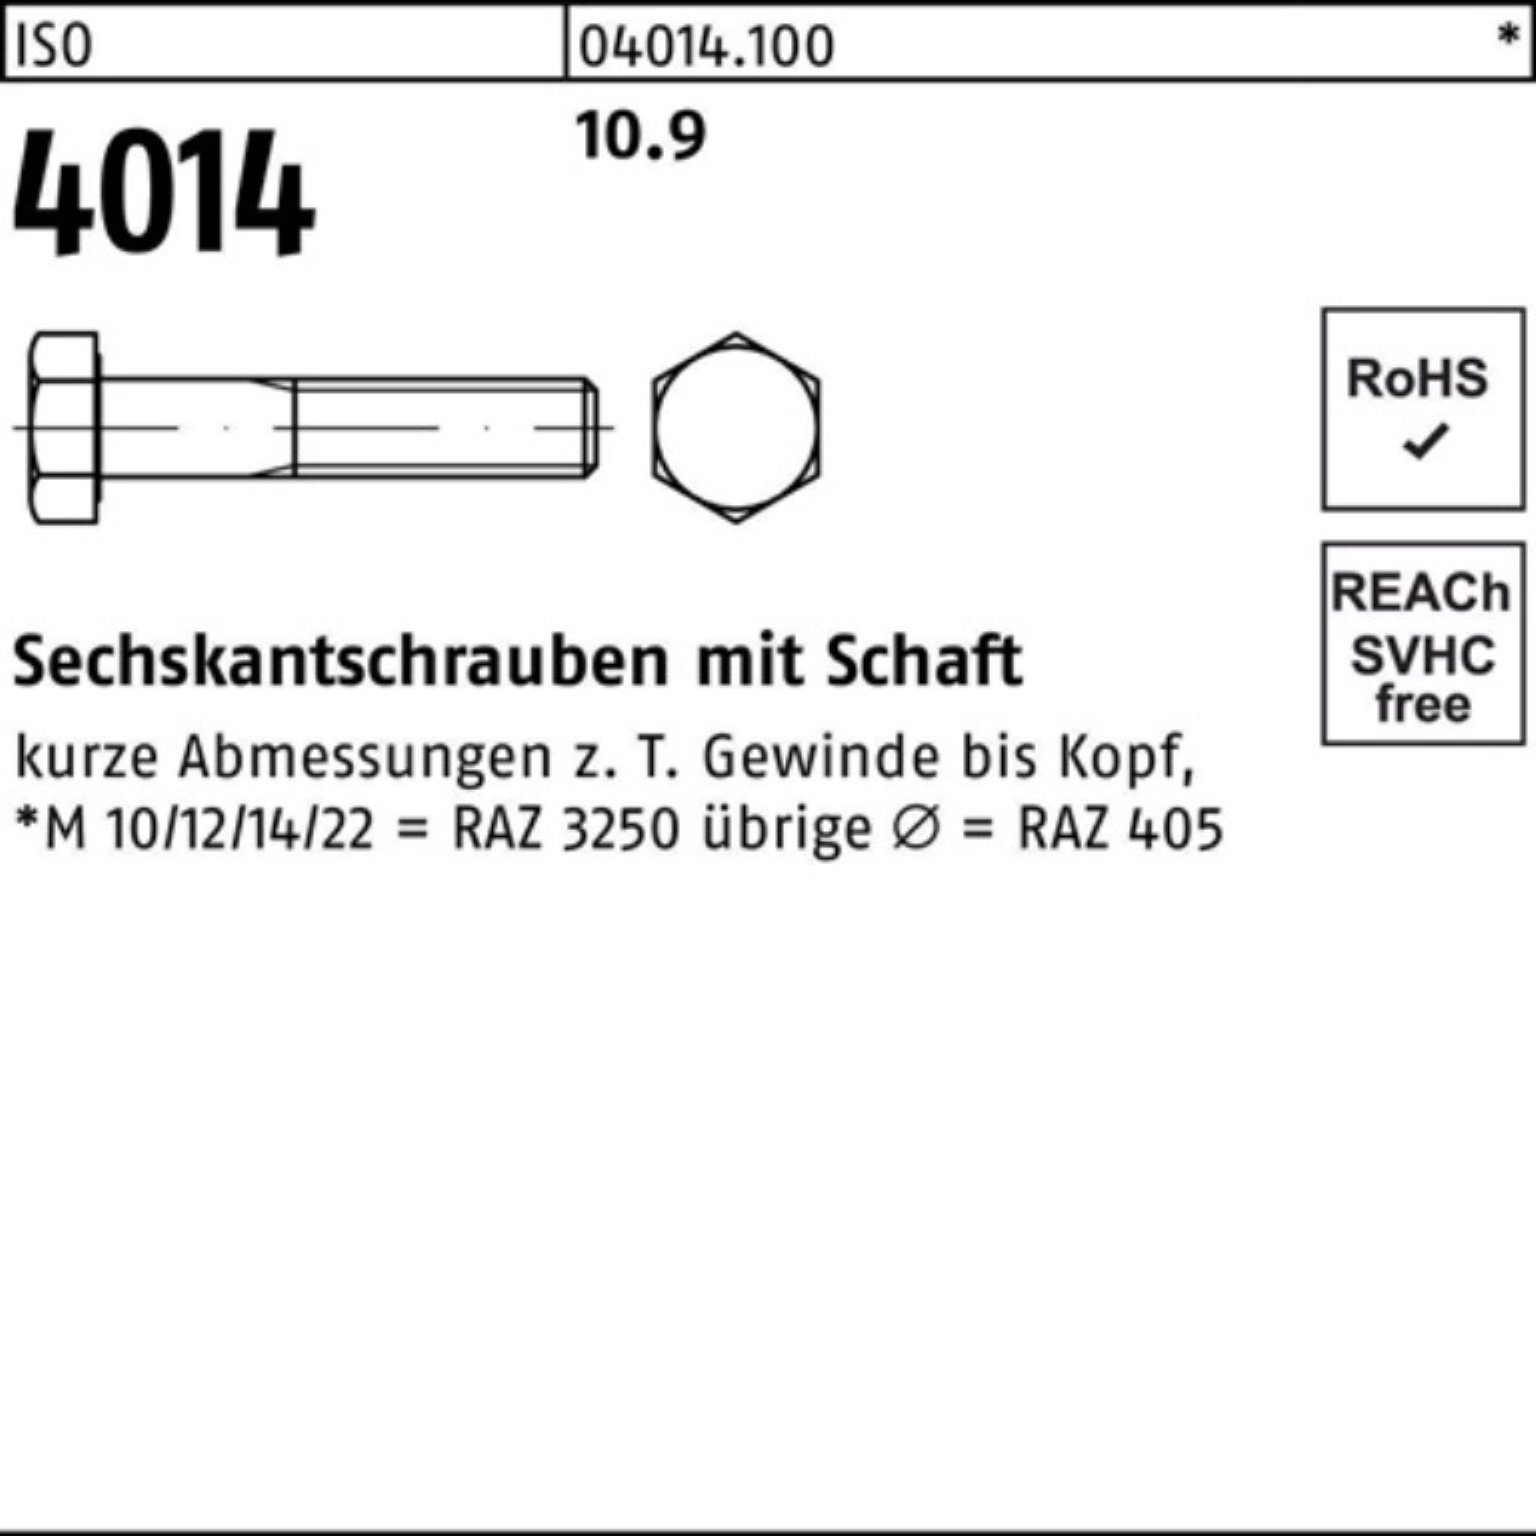 50 100er I 4014 Schaft 10.9 ISO 200 Sechskantschraube Bufab Pack M10x Stück Sechskantschraube